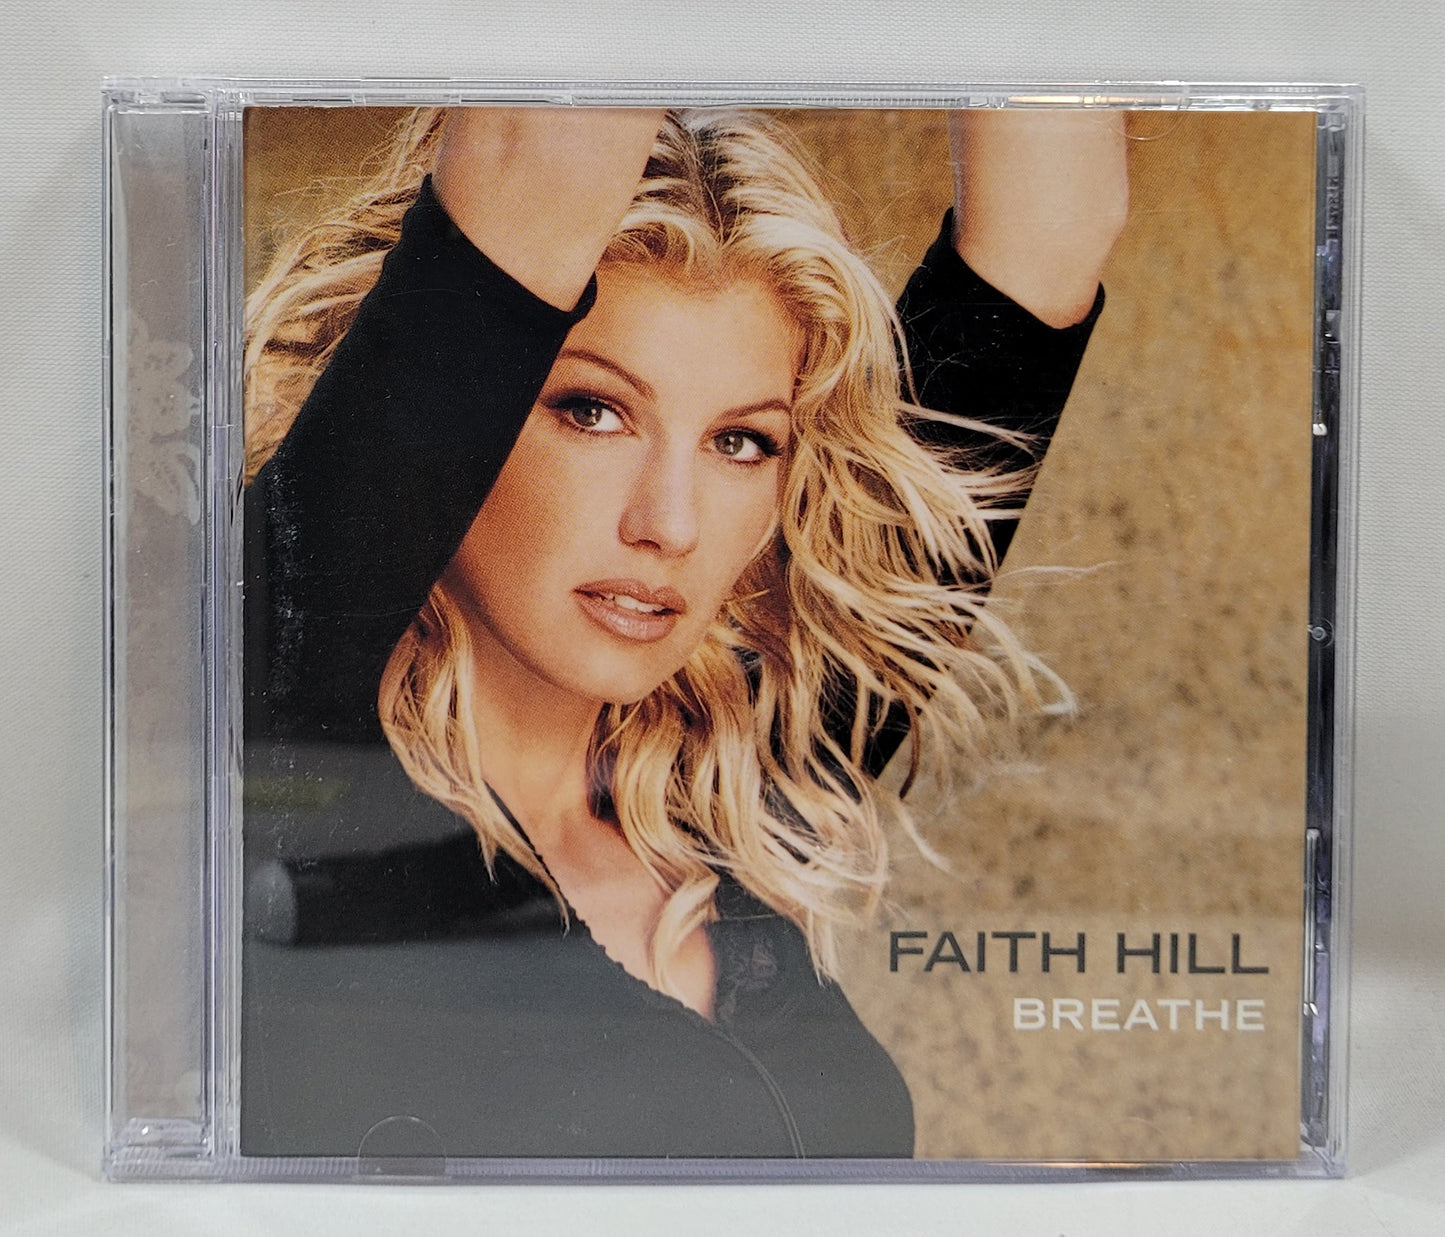 Faith Hill - Breathe [1999 Olyphant Pressing] [Used CD] [B]